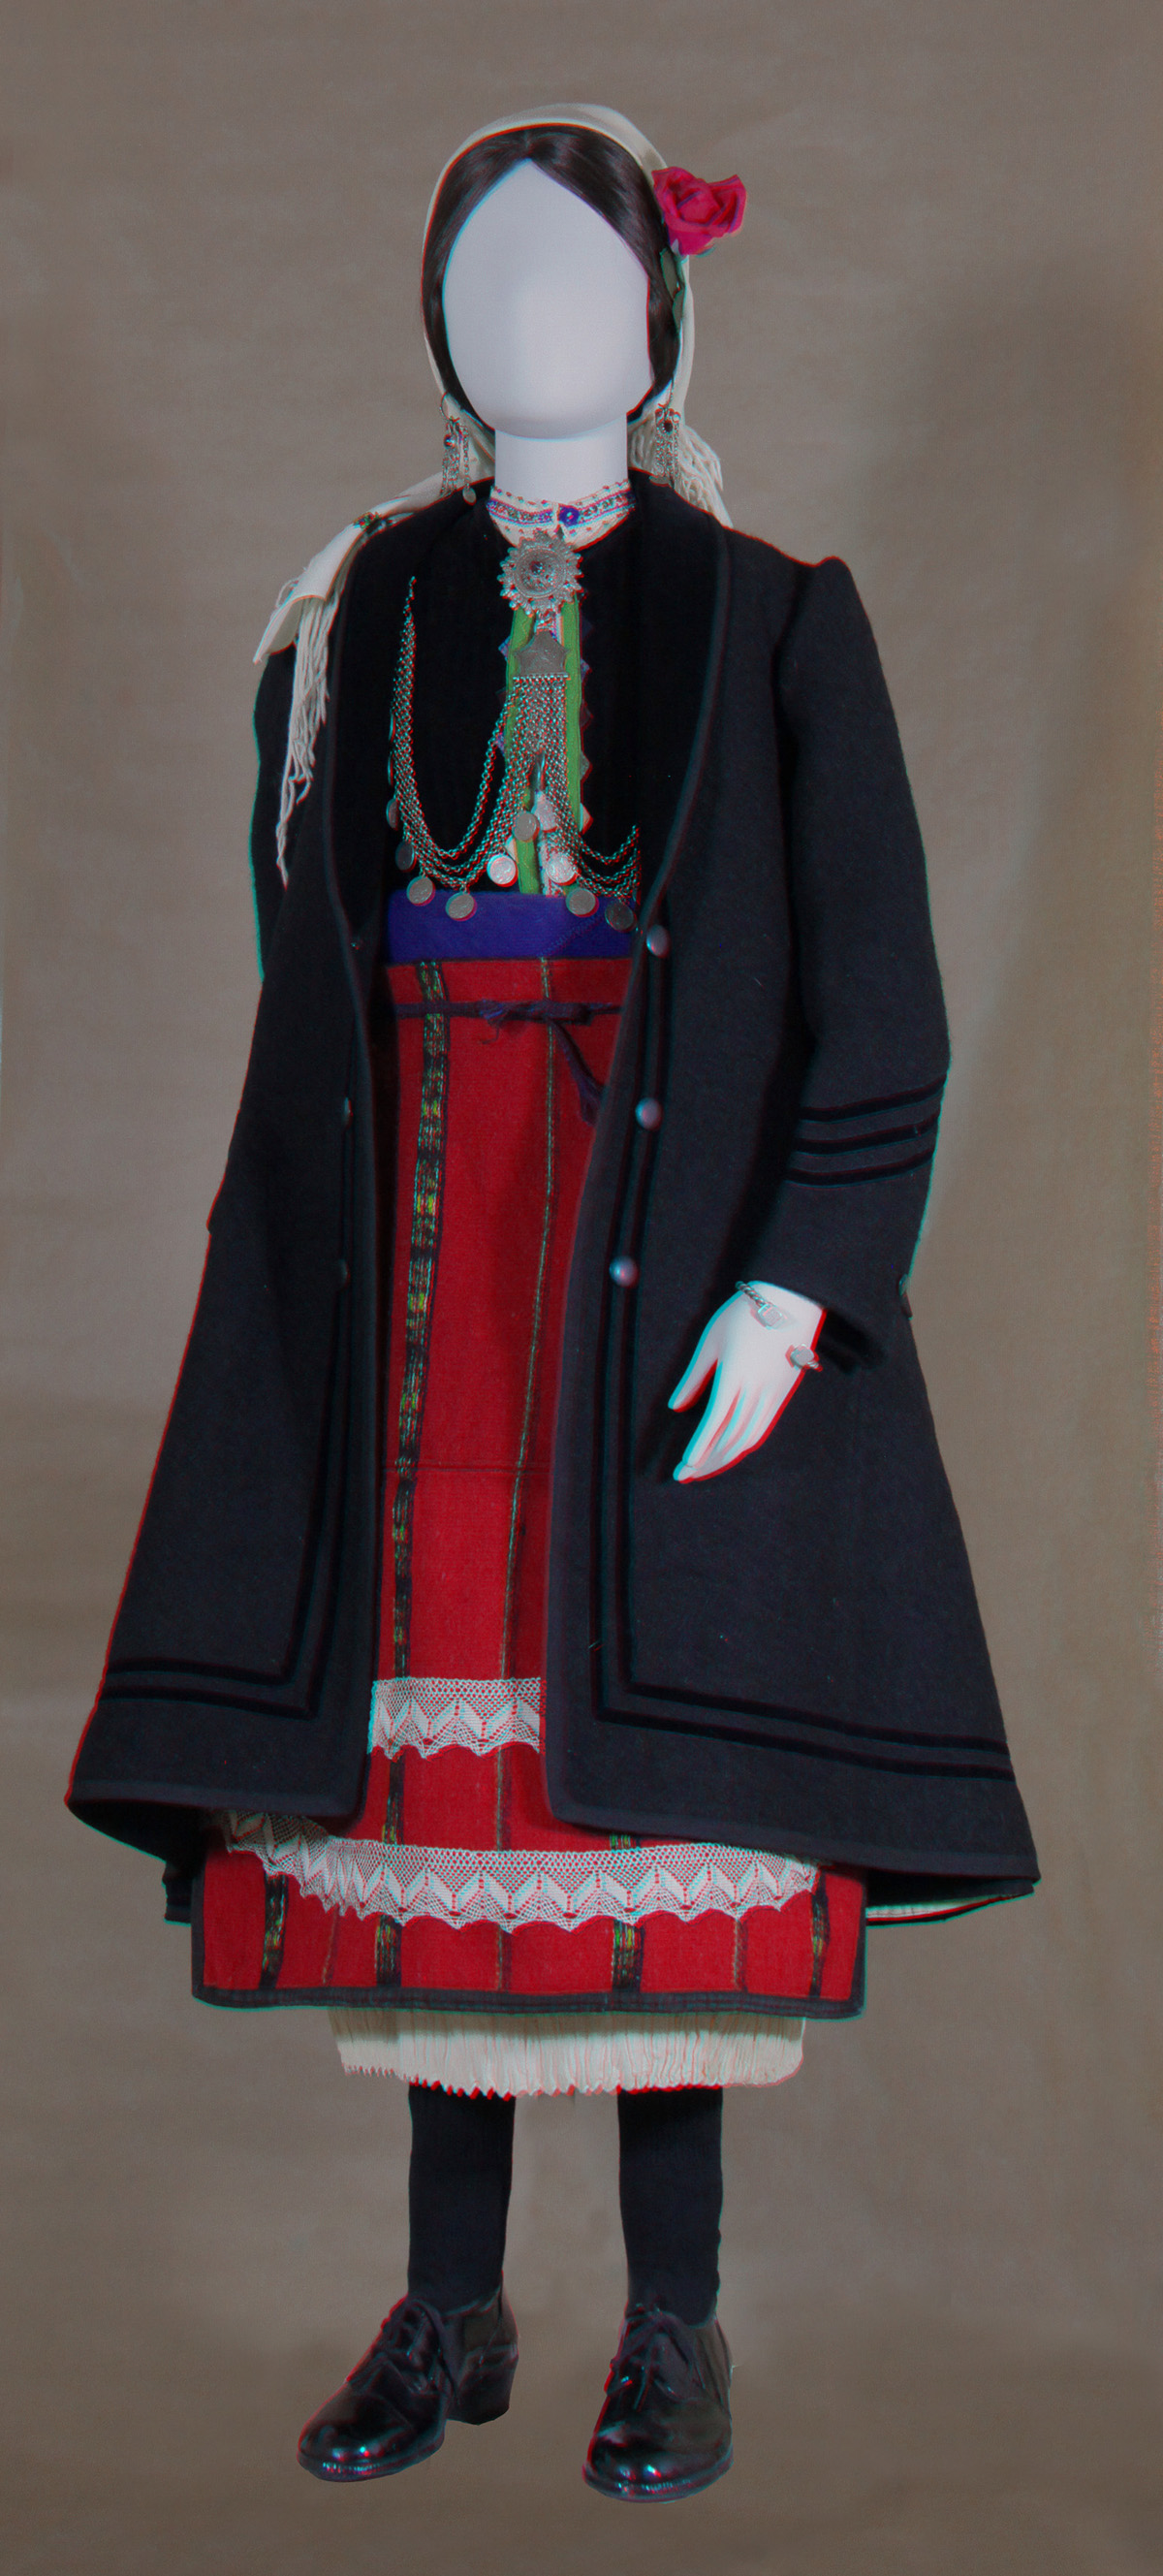 Κούκλα με γυναικεία φορεσιά από Σκοπιά Ν. Φλώρινας (από την αίθουσα Δυτικής Μακεδονίας)